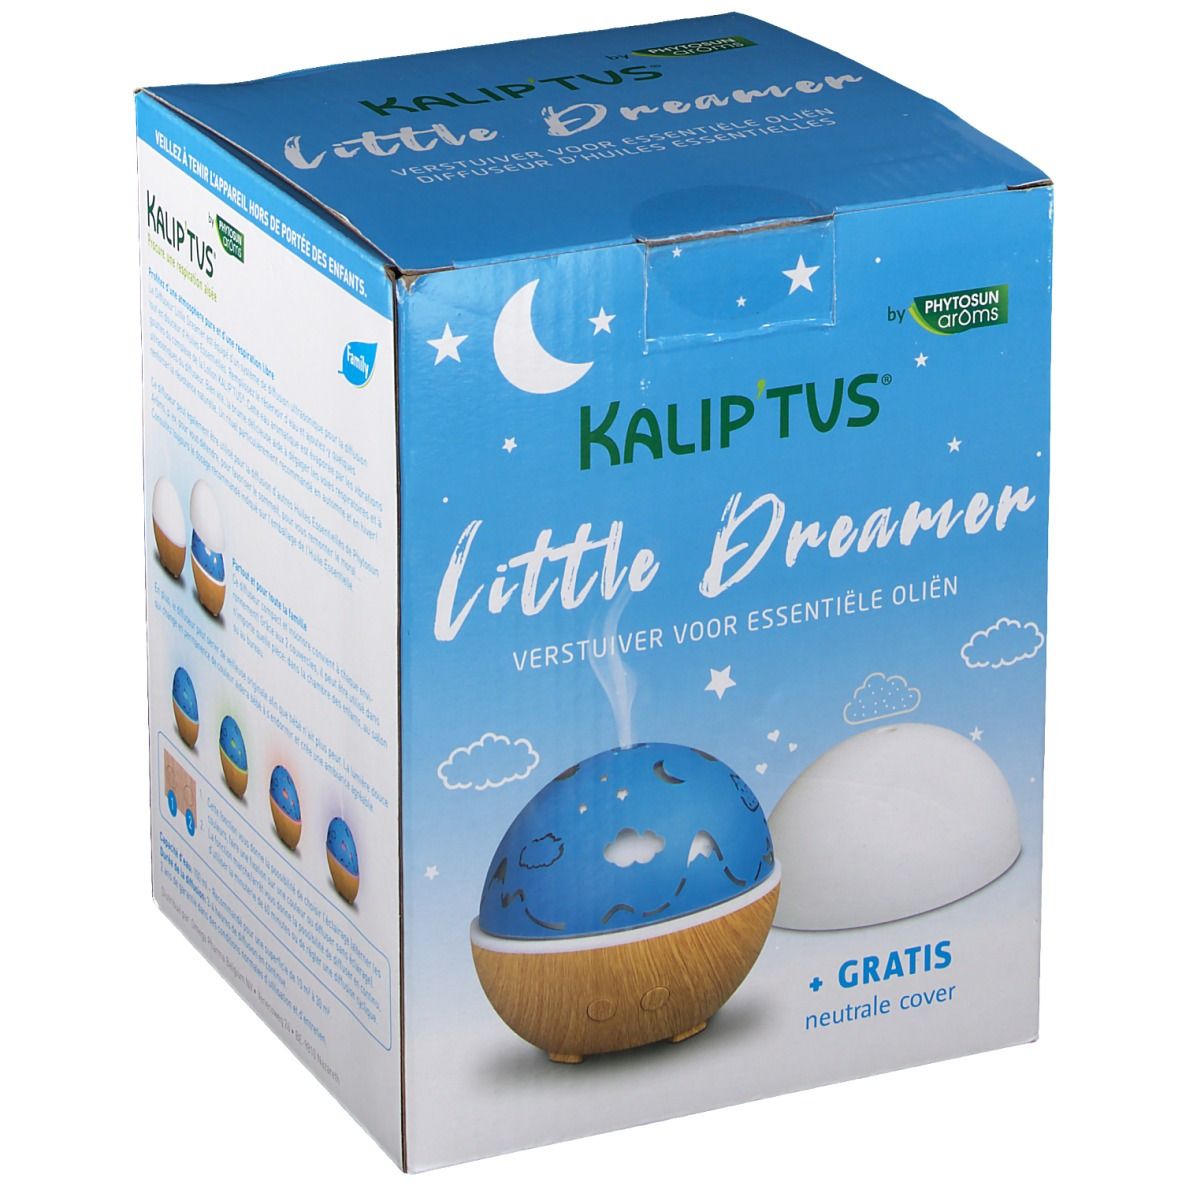 Kalip'tus® Little Dreamer Diffuseur d'huiles essentielles